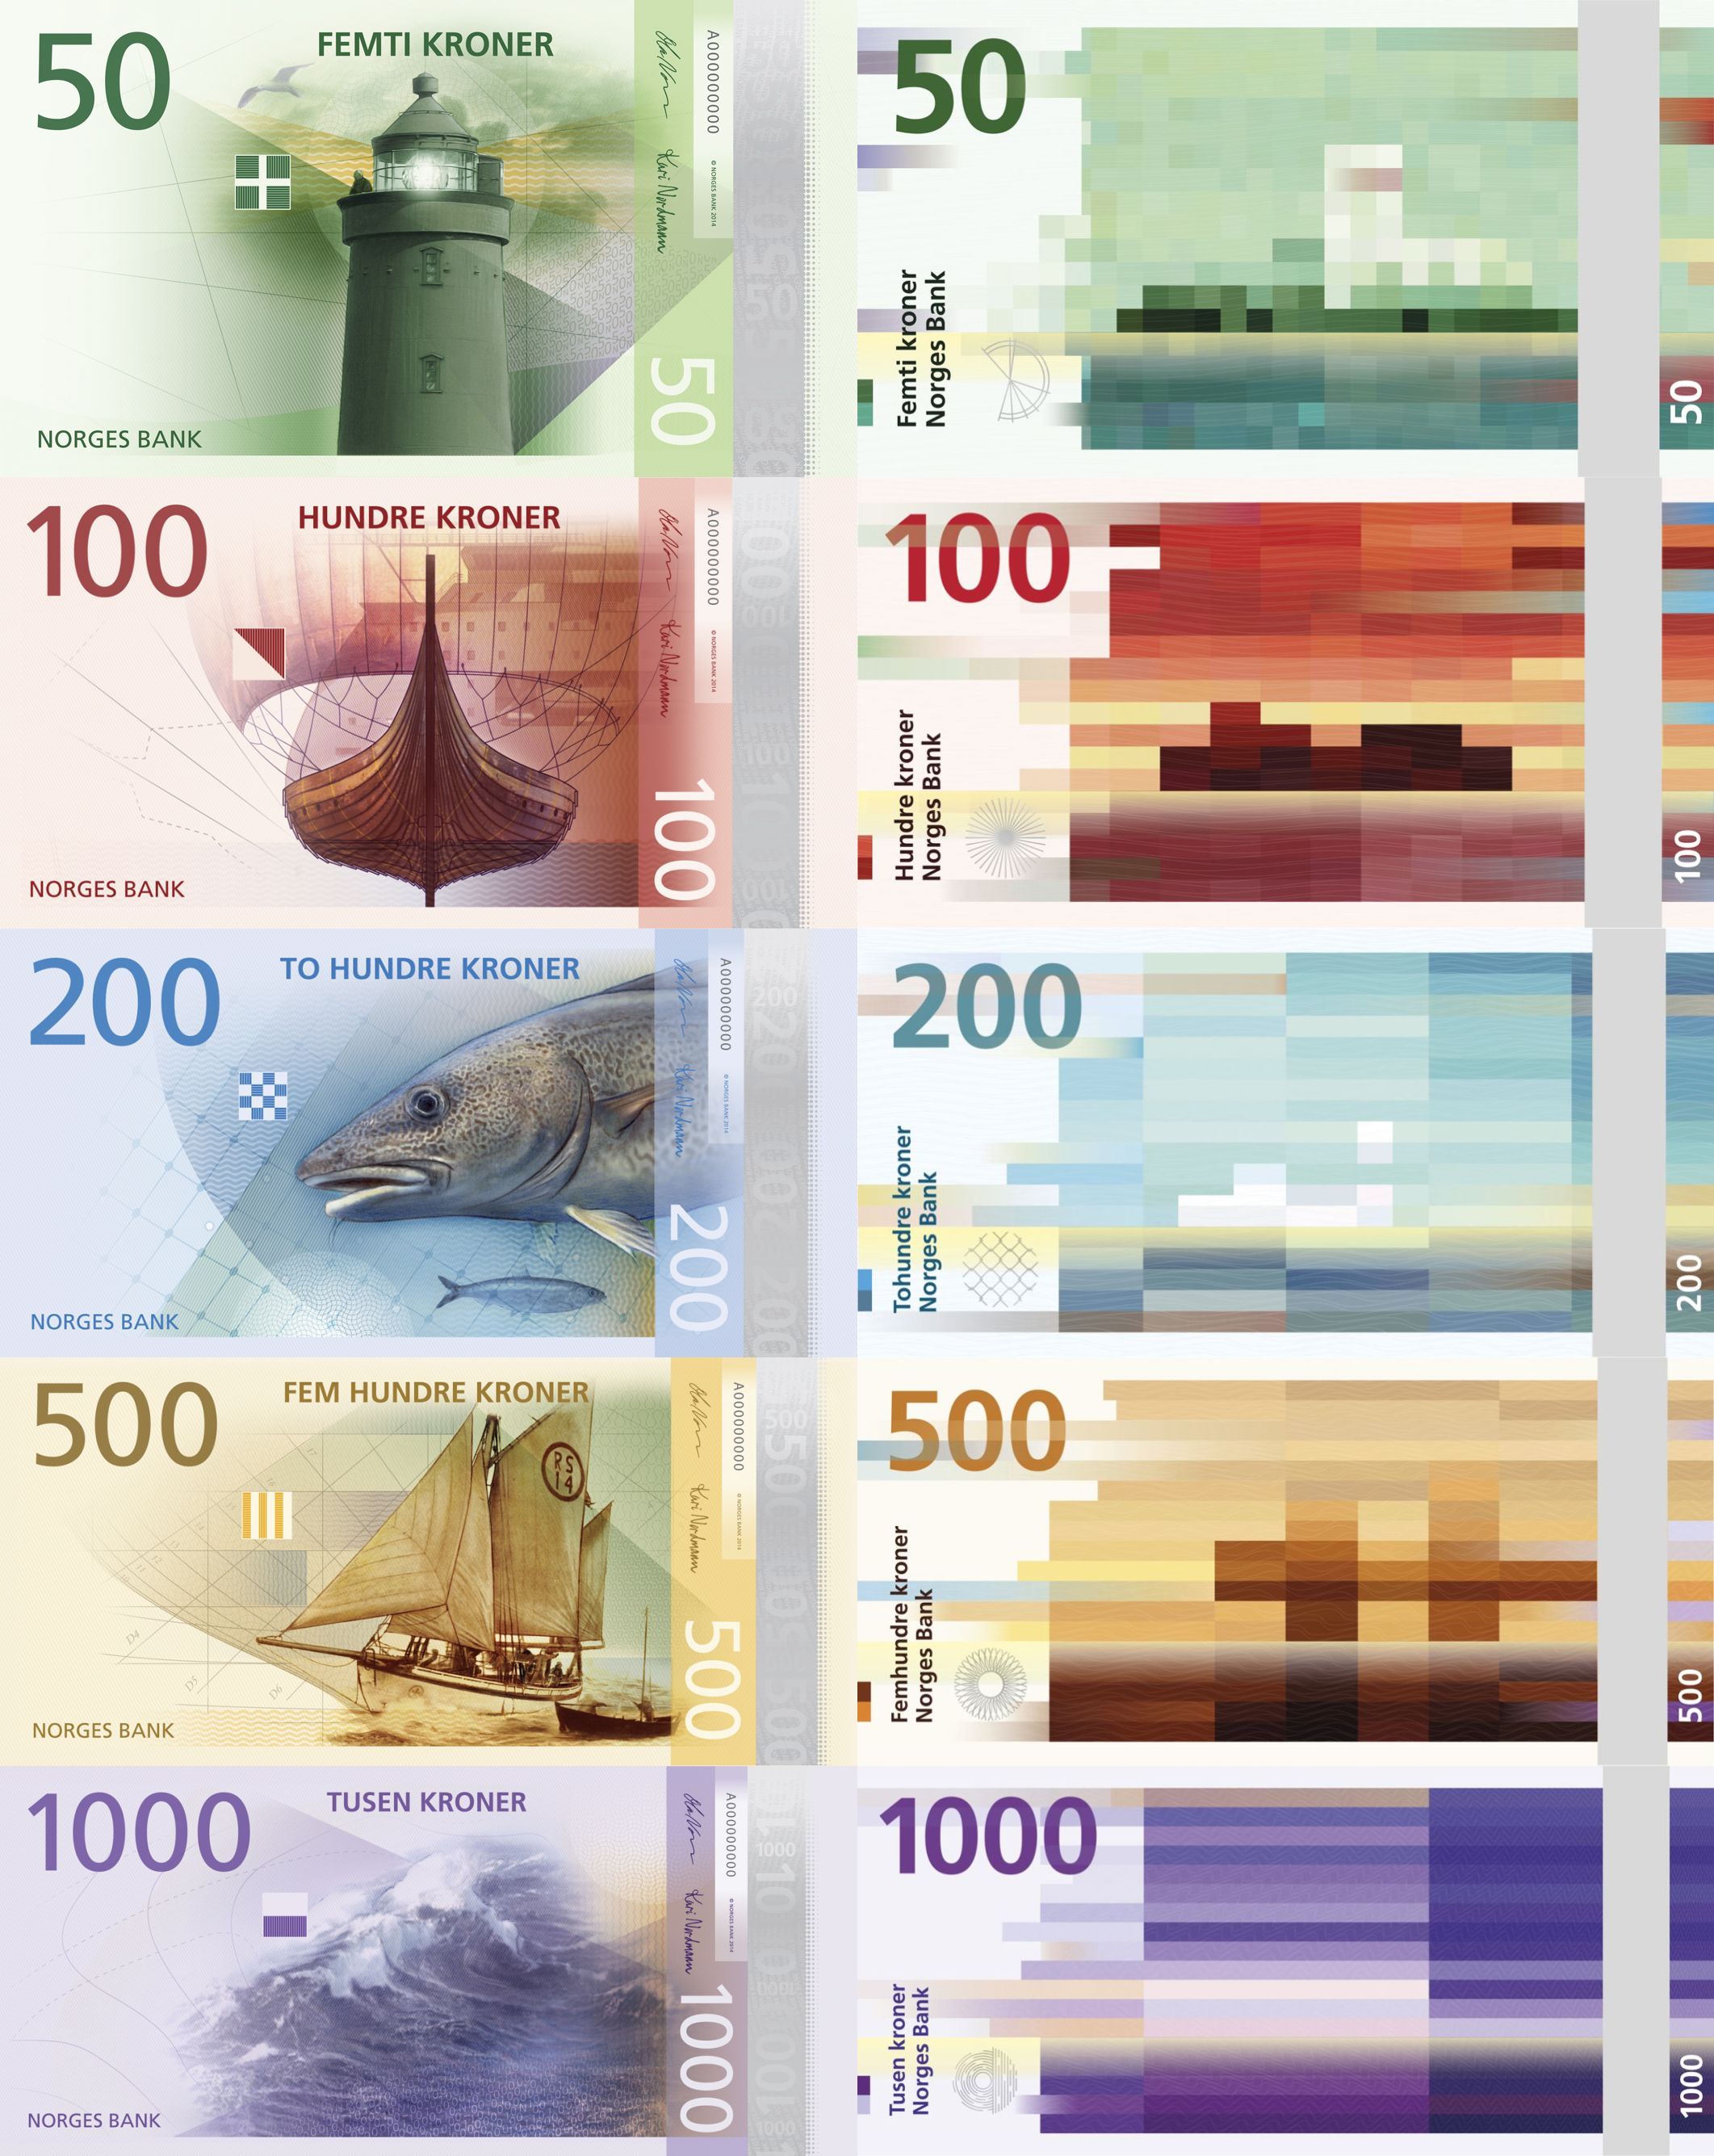 Norwegia zaprezentowała projekty nowej serii banknotów